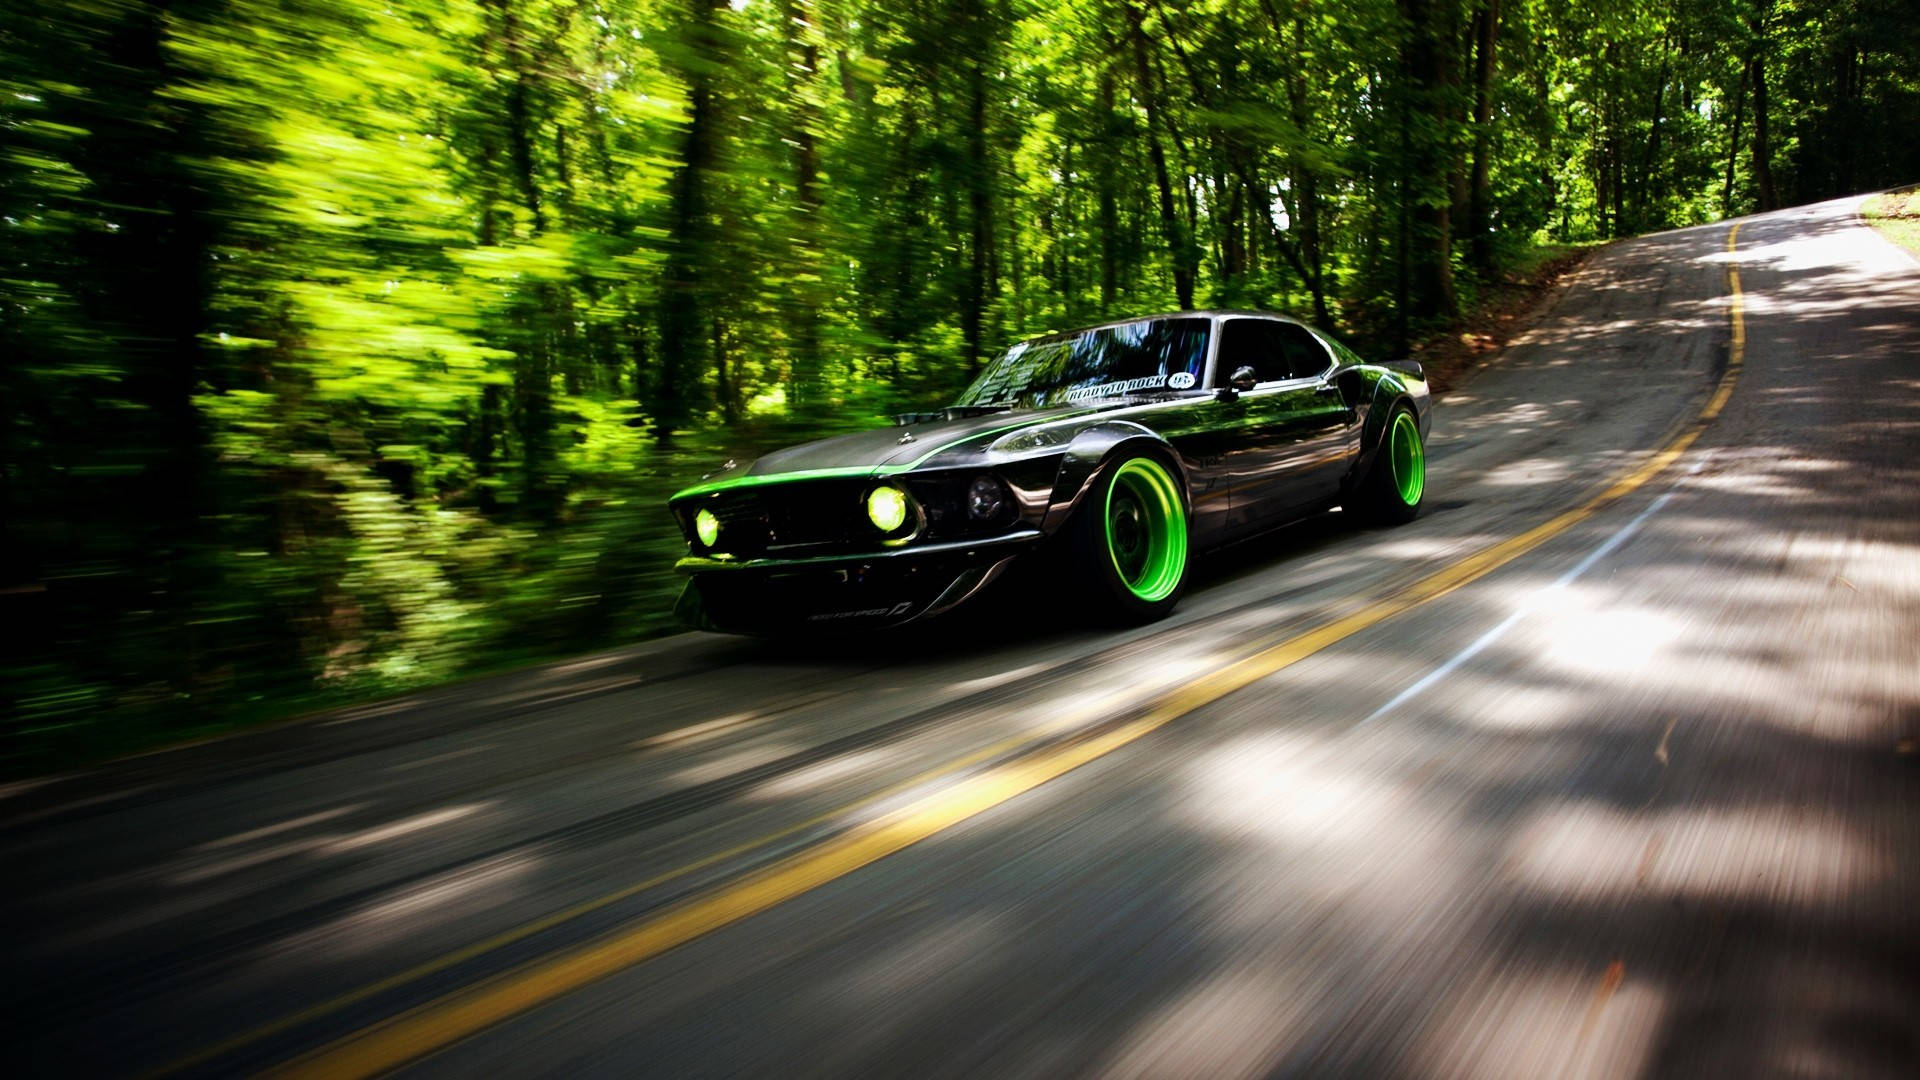 Tapetför Dator Eller Mobil: Rtr-x Green Mustang Hd Wallpaper